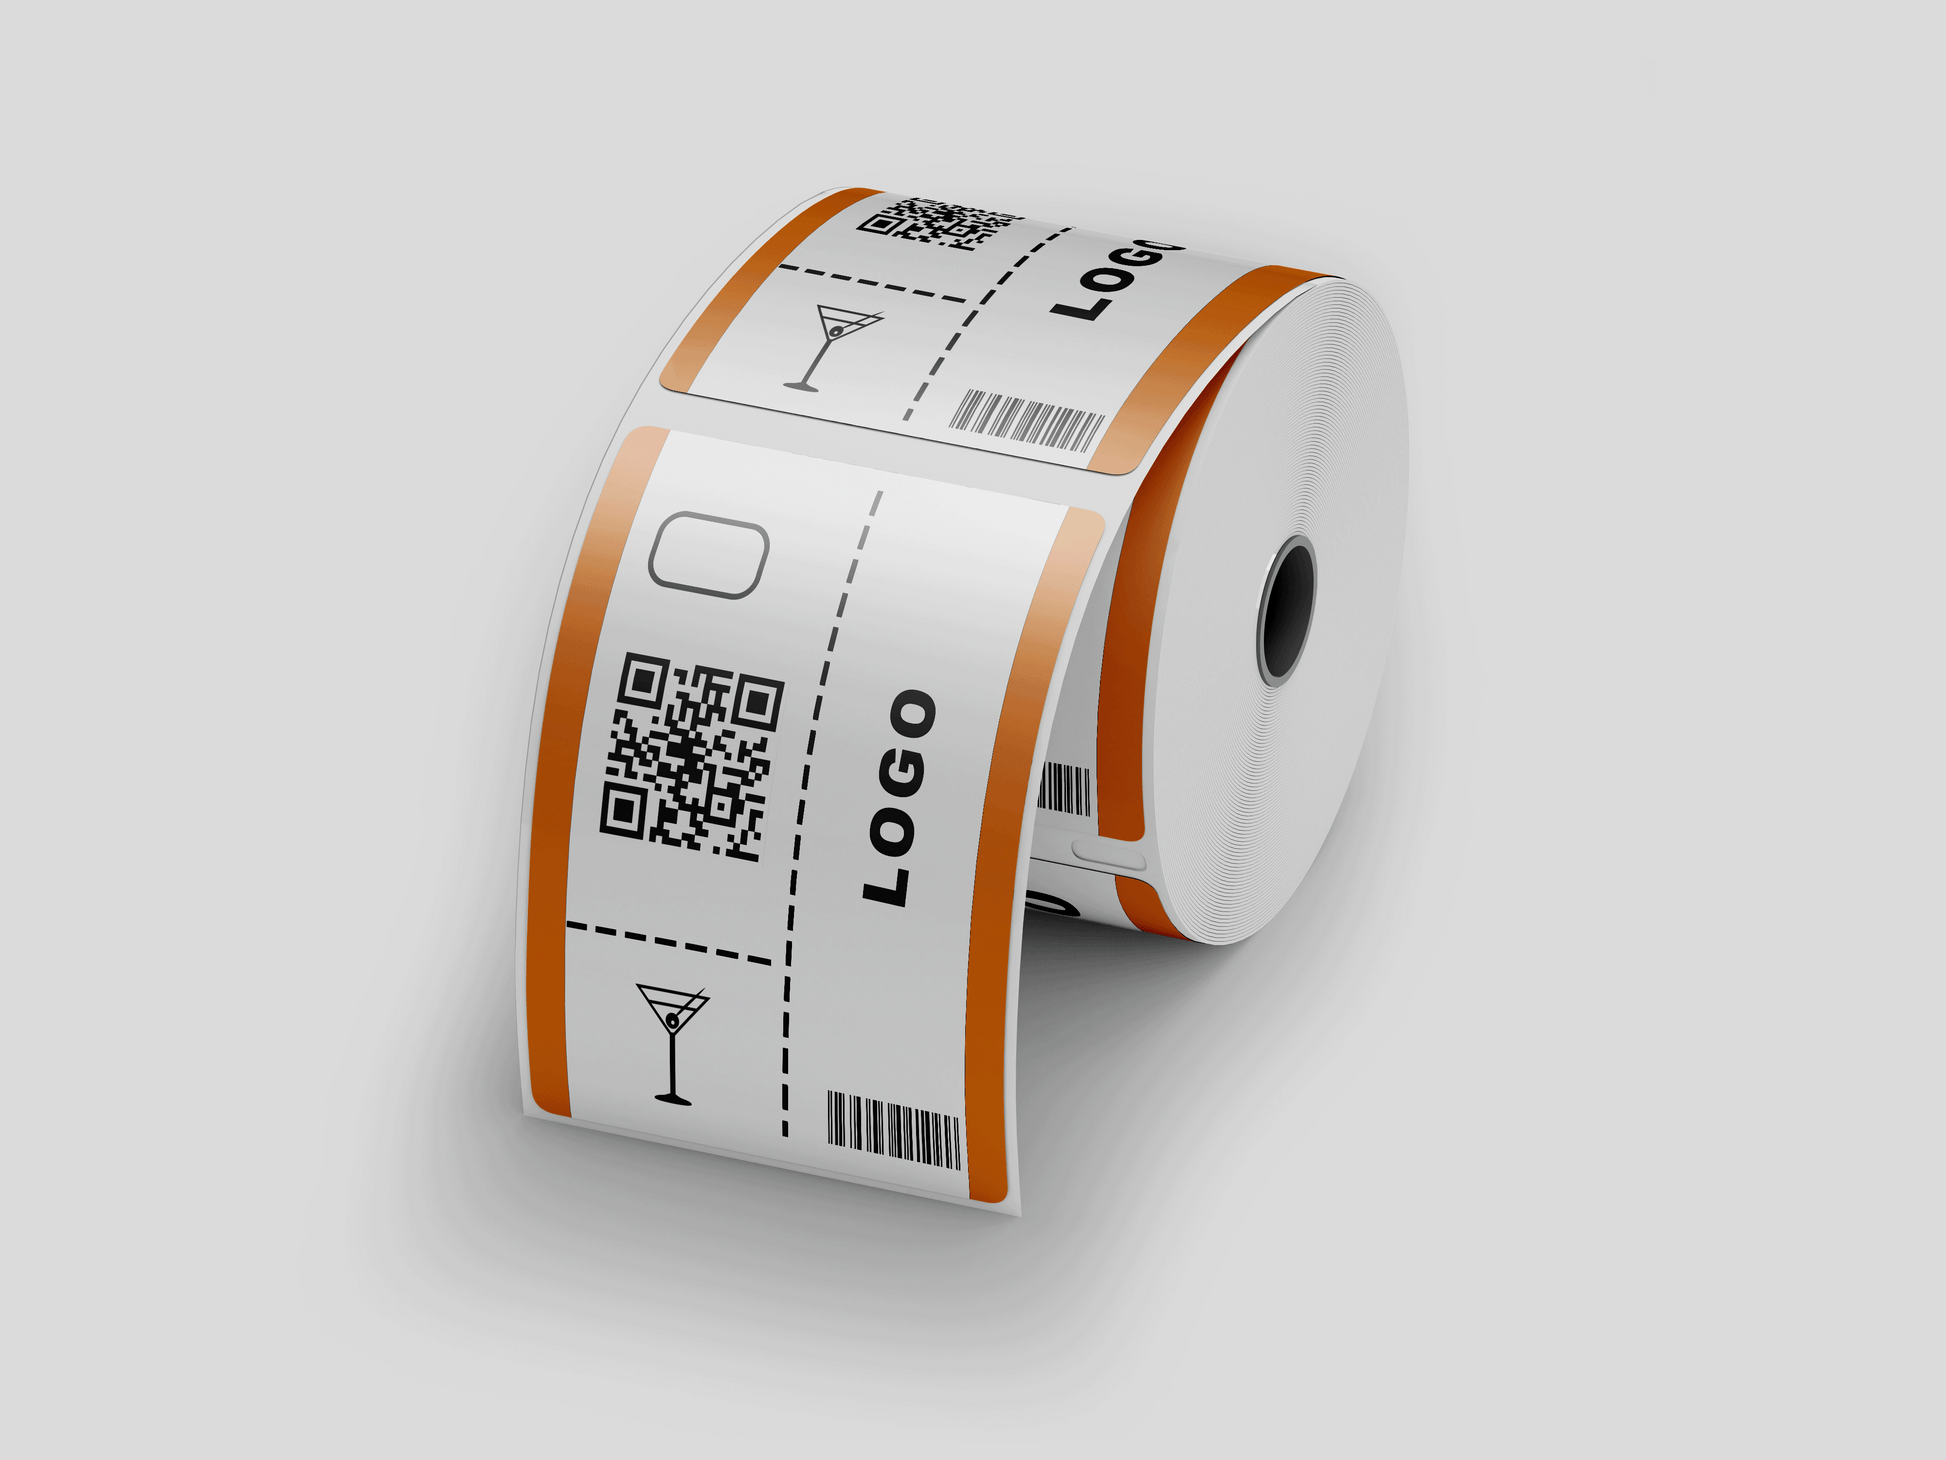 En rulle Garderobsbiljetter tryck Via eMail biljettpapper med termiskt tryck på vit bakgrund.